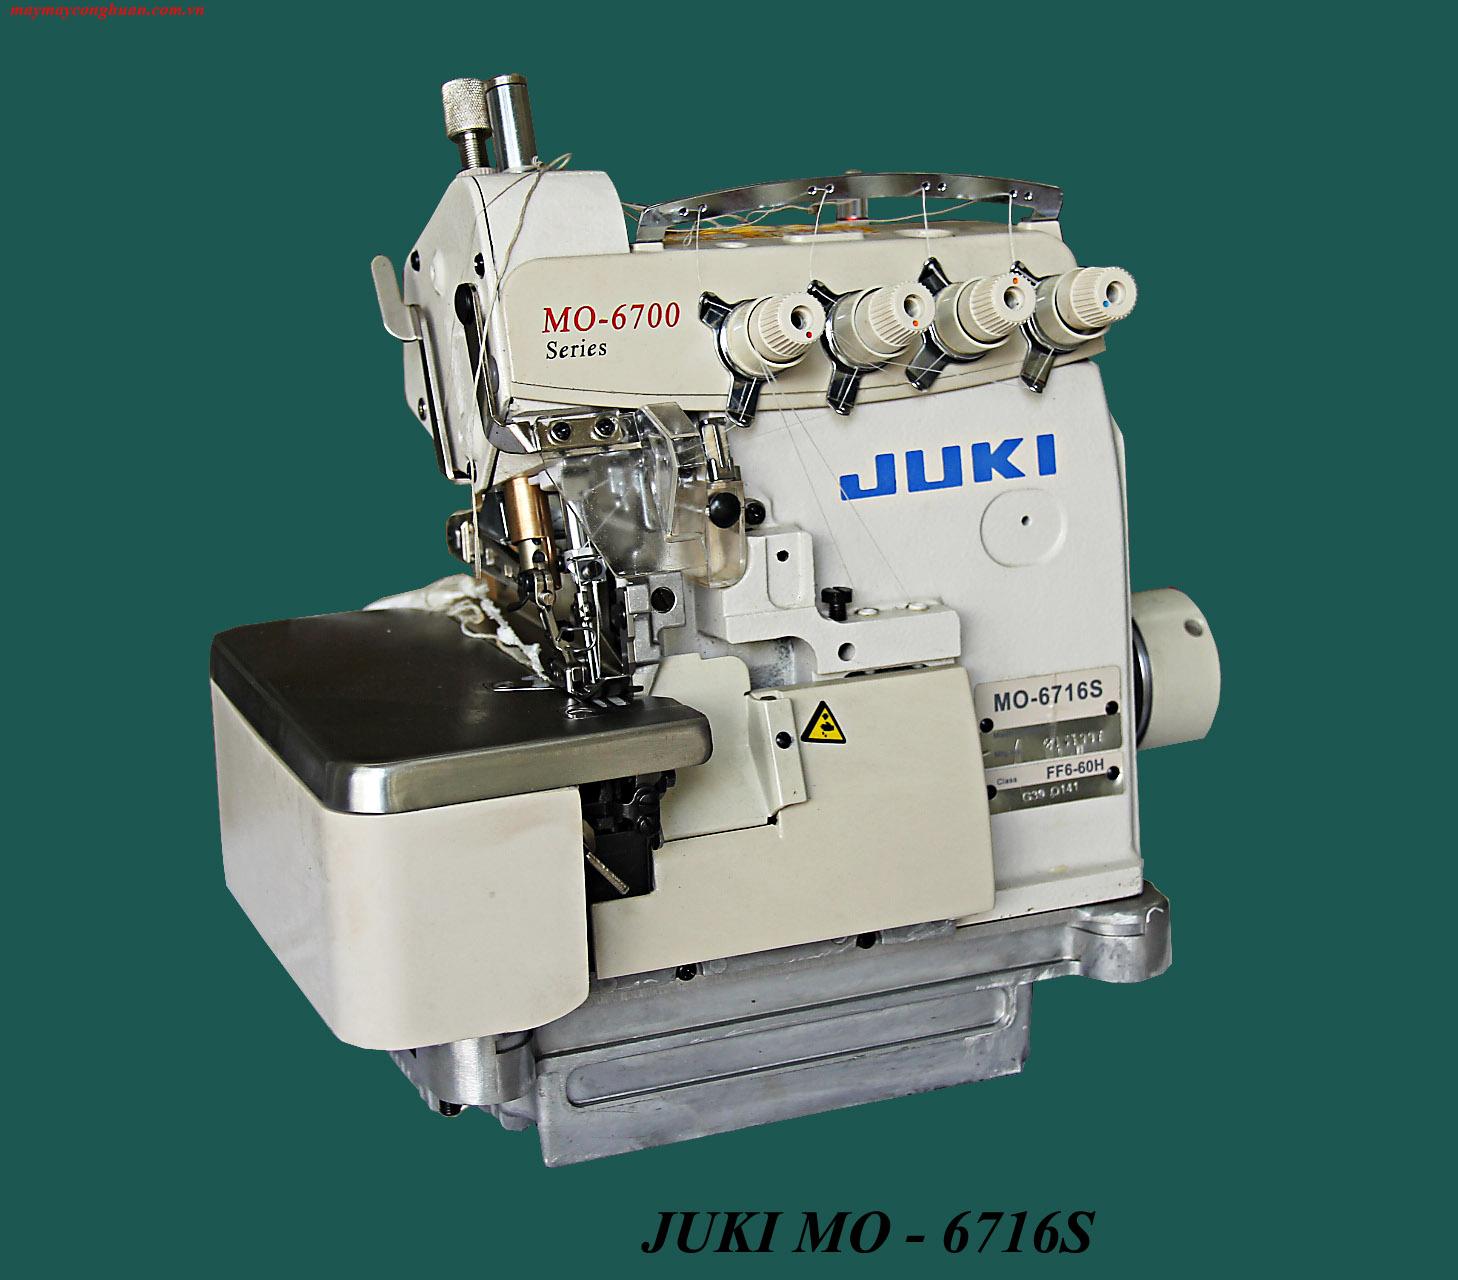 JUKI MO-6716